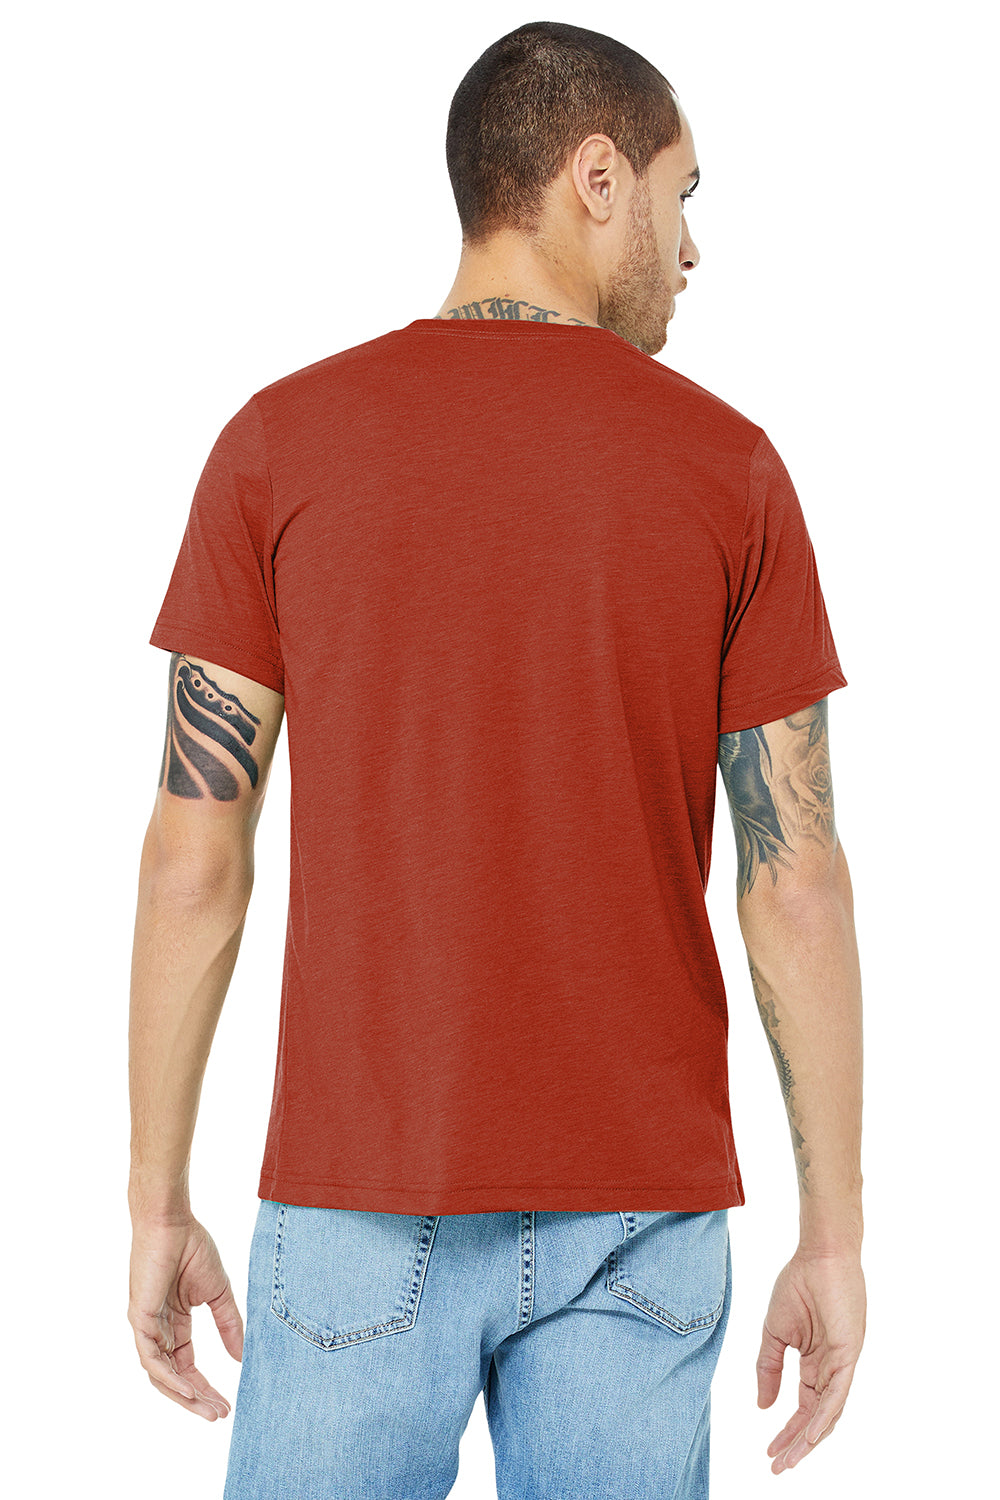 Bella + Canvas BC3413/3413C/3413 Mens Short Sleeve Crewneck T-Shirt Brick Red Model Back